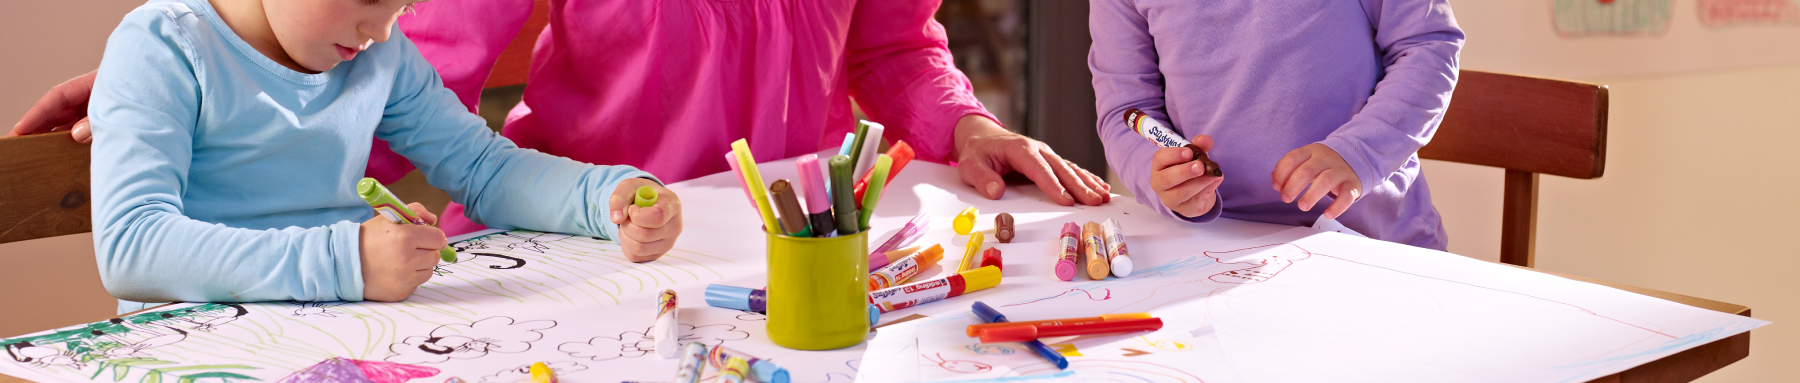 Kinder zeichnen kreativ mit bunten Markern und Buntstiften auf einem großen Blatt Papier.